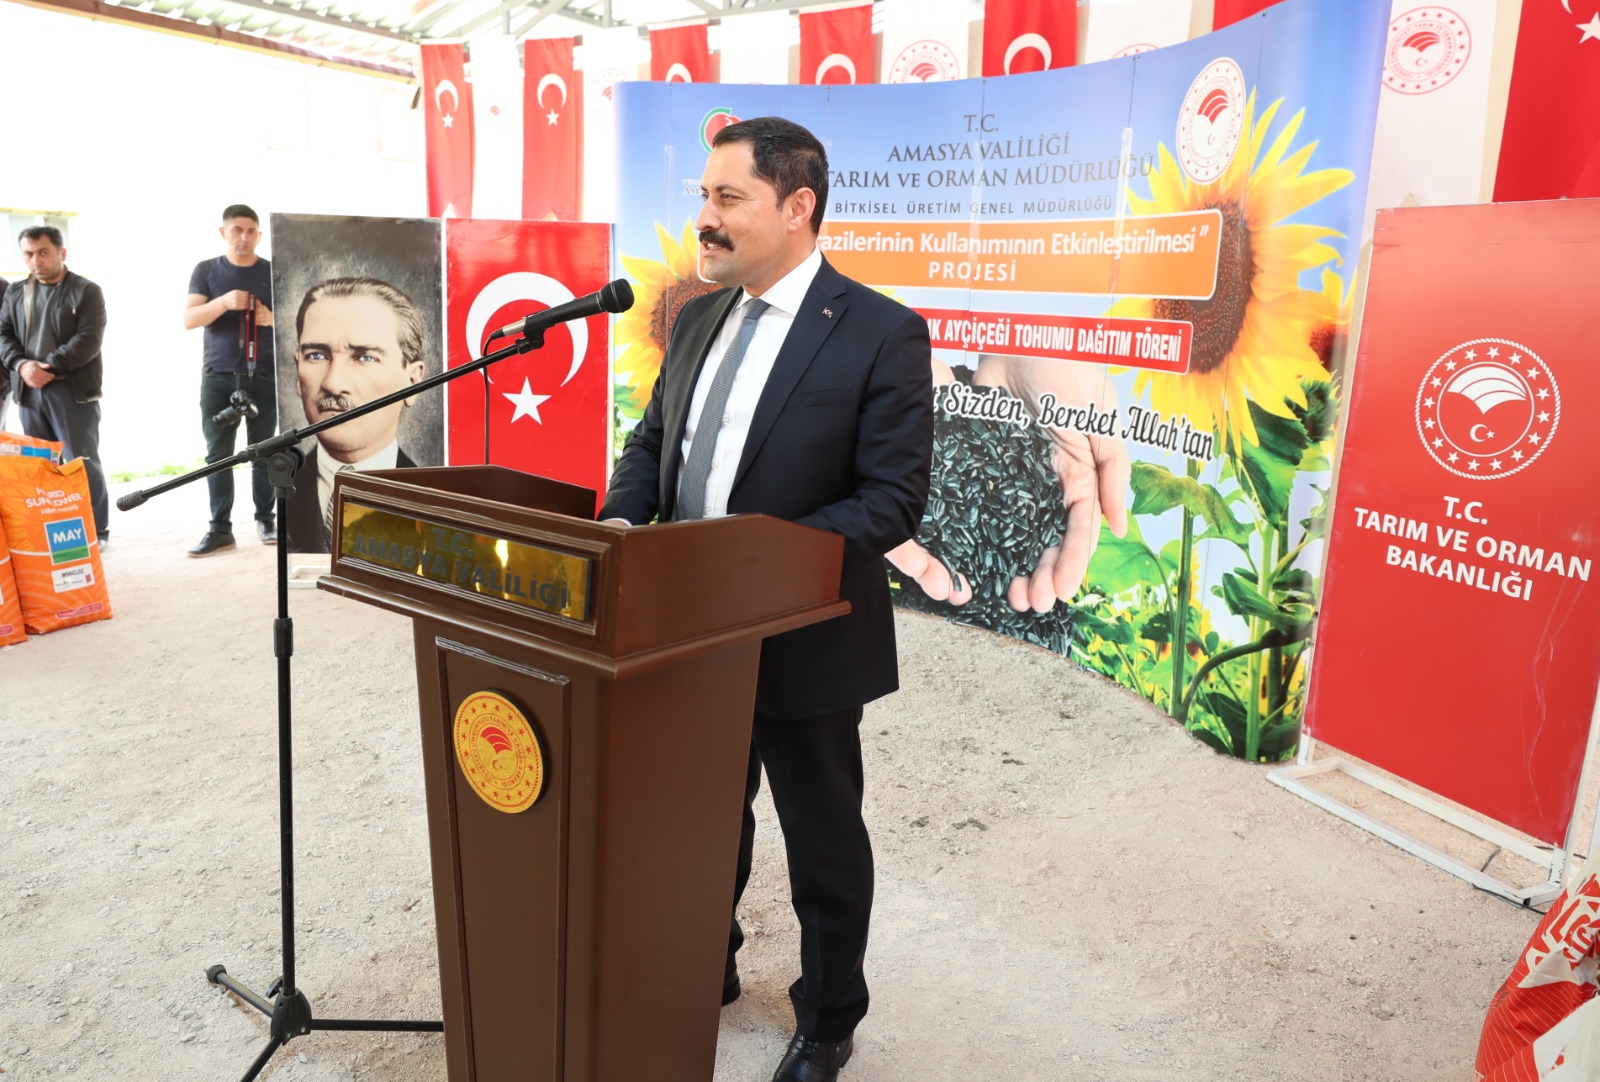 Amasya Valisi Mustafa MASATLI, Amasya İlinde ve Ülkemiz Tarımını Desteklemek İçin Hayata Geçirdiğimiz Projeler Kapsamında, Ayçiçek Tohumu Dağıtımı Gerçekleştirdi